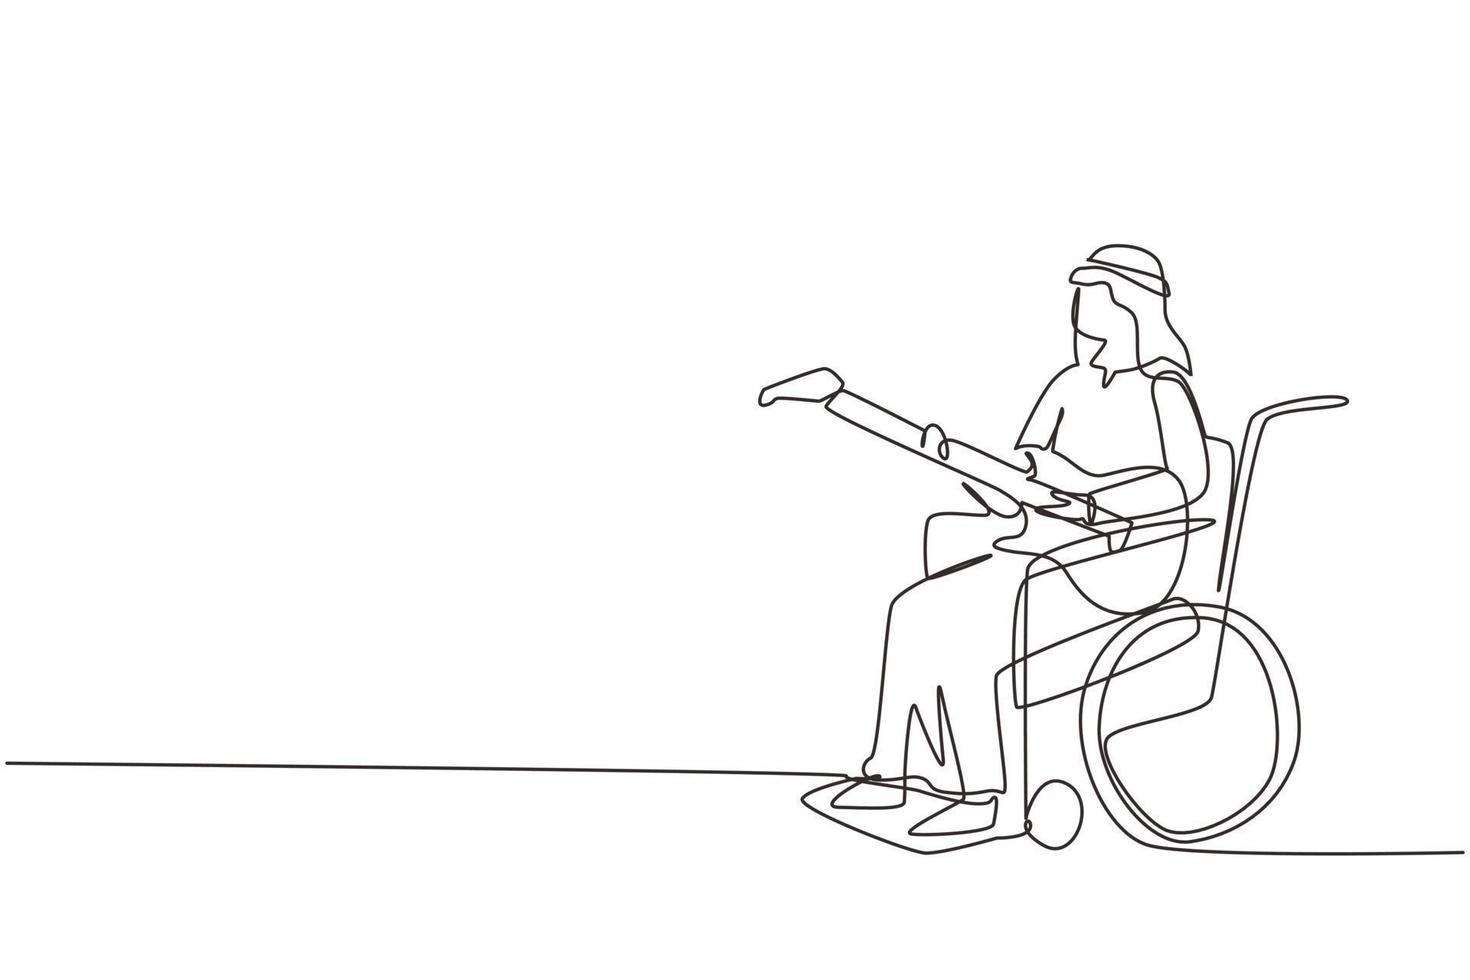 un solo dibujo de una línea hombre árabe sentado en silla de ruedas tocando guitarra eléctrica, cantando una canción. Físicamente desarmado. persona en la sala de la habitación del hospital. ilustración de vector gráfico de diseño de dibujo de línea continua moderna